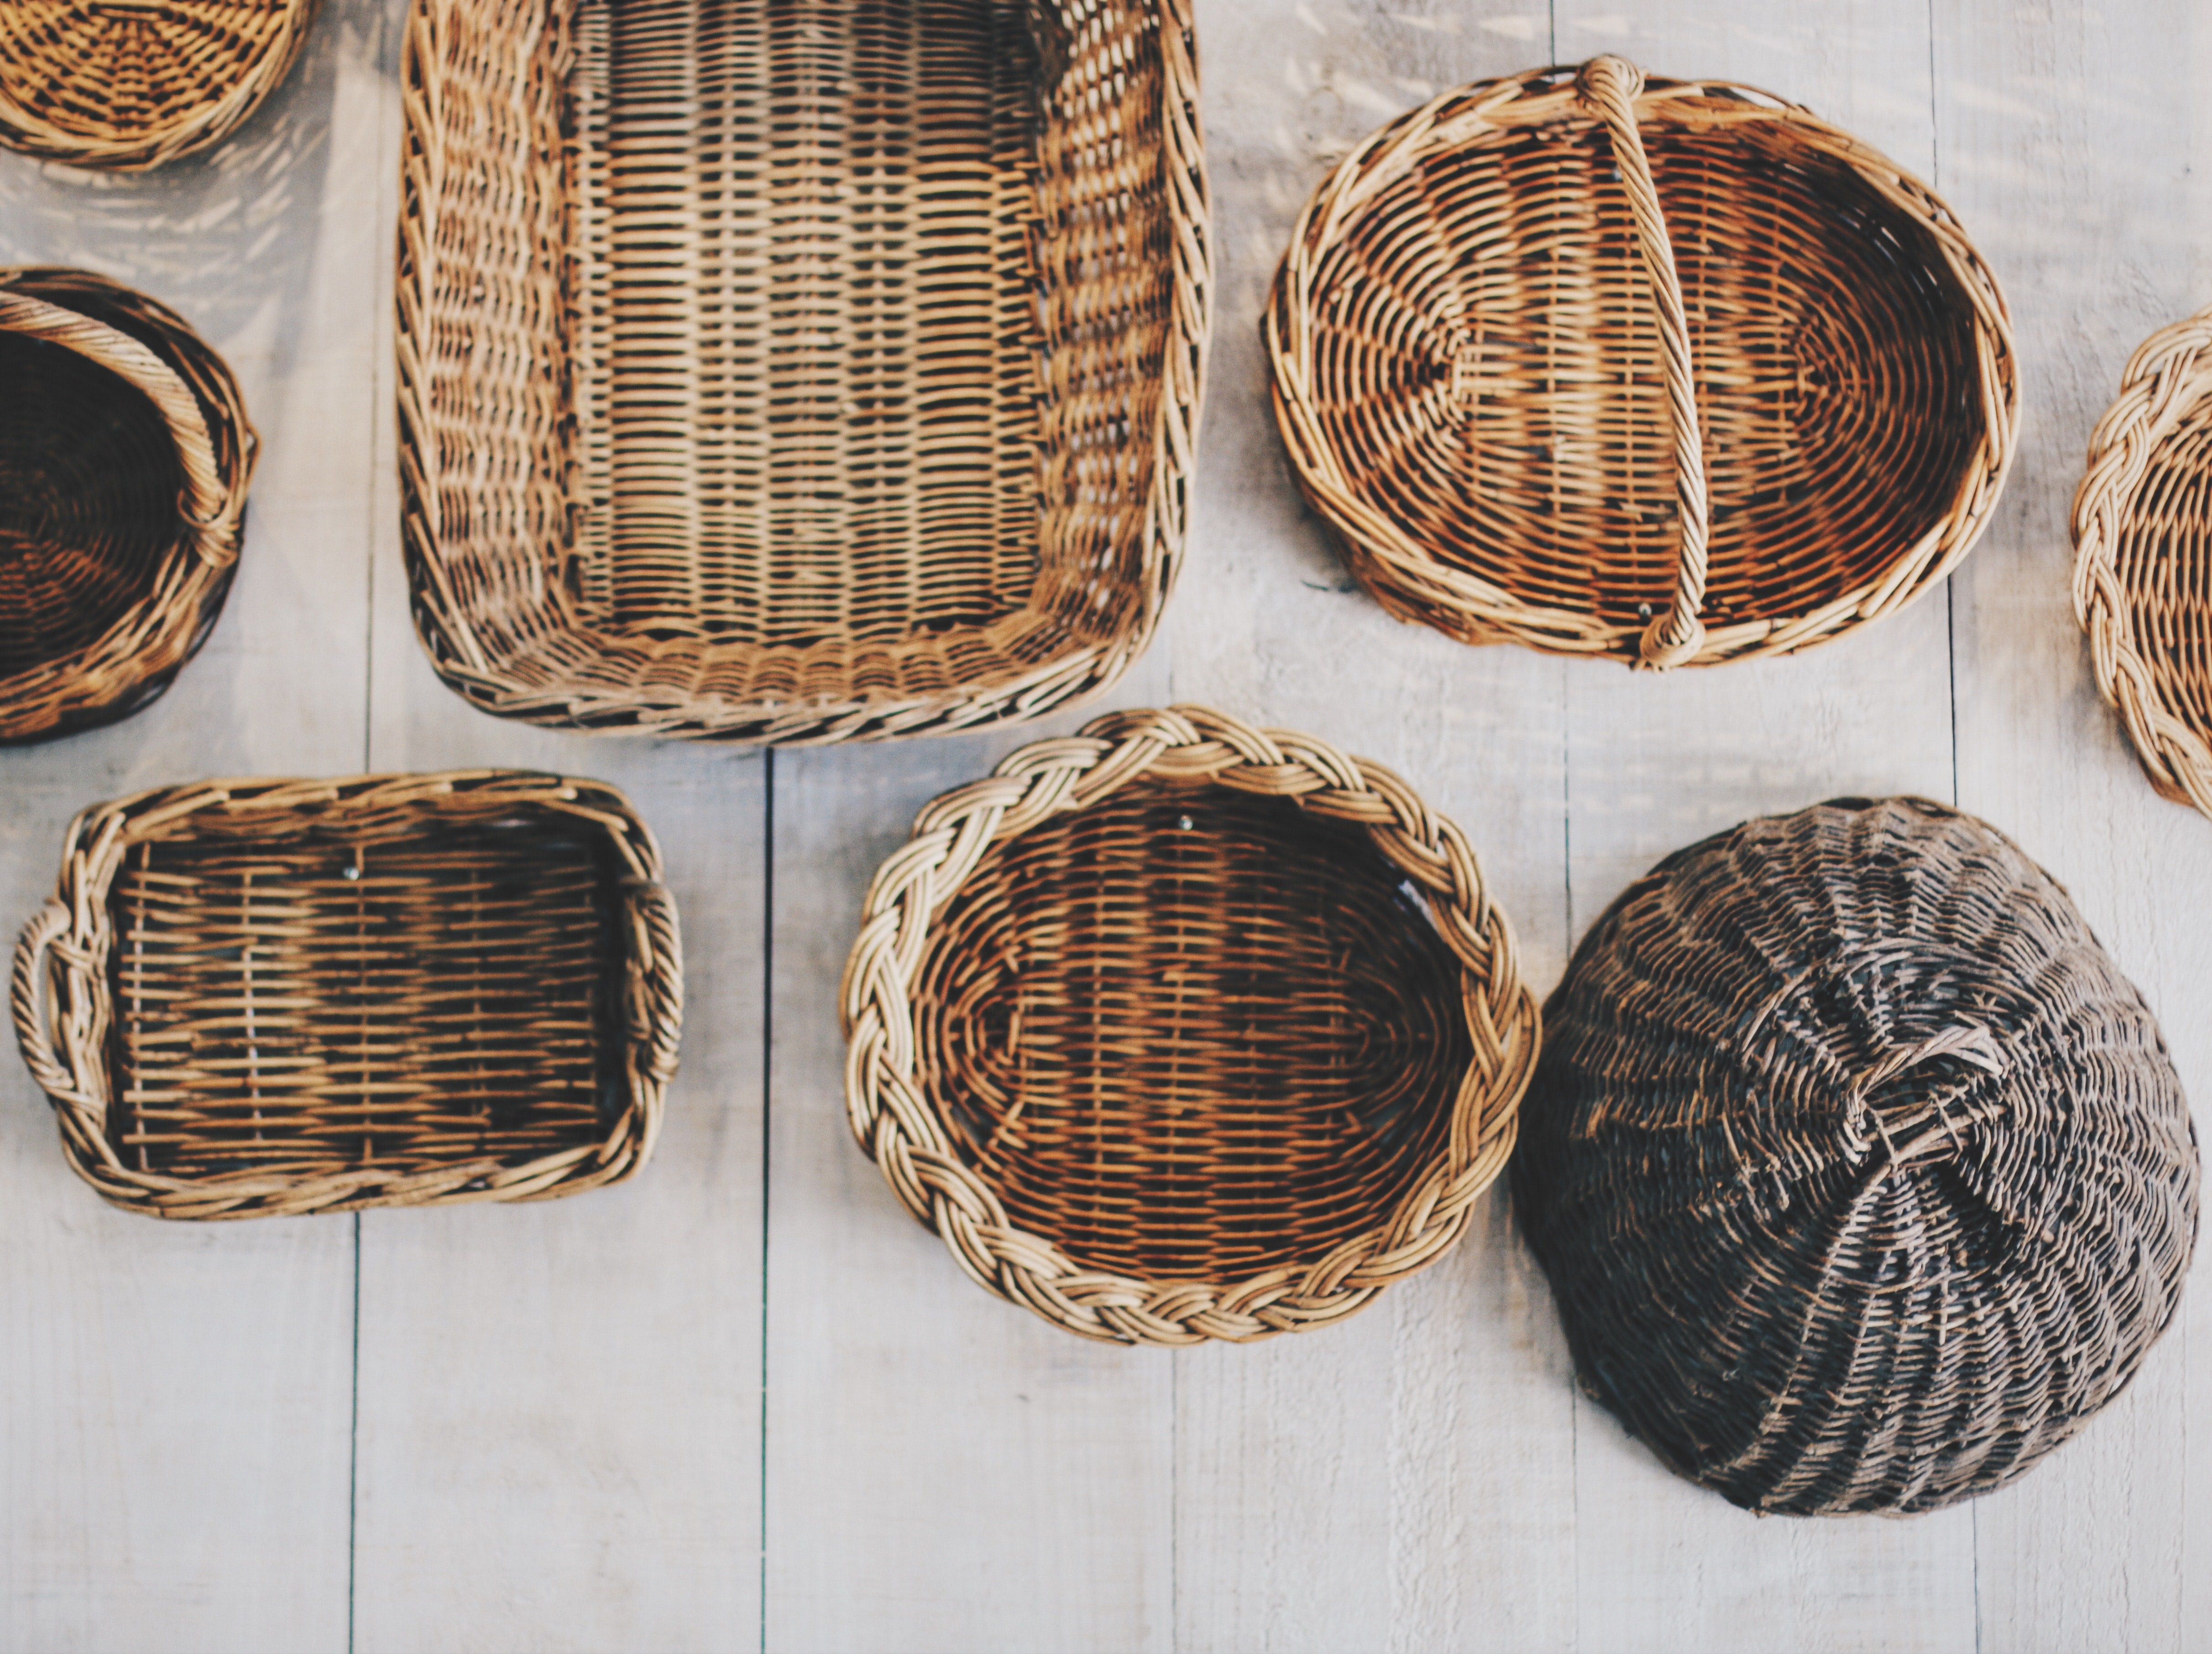 Assorted woven wicker baskets.